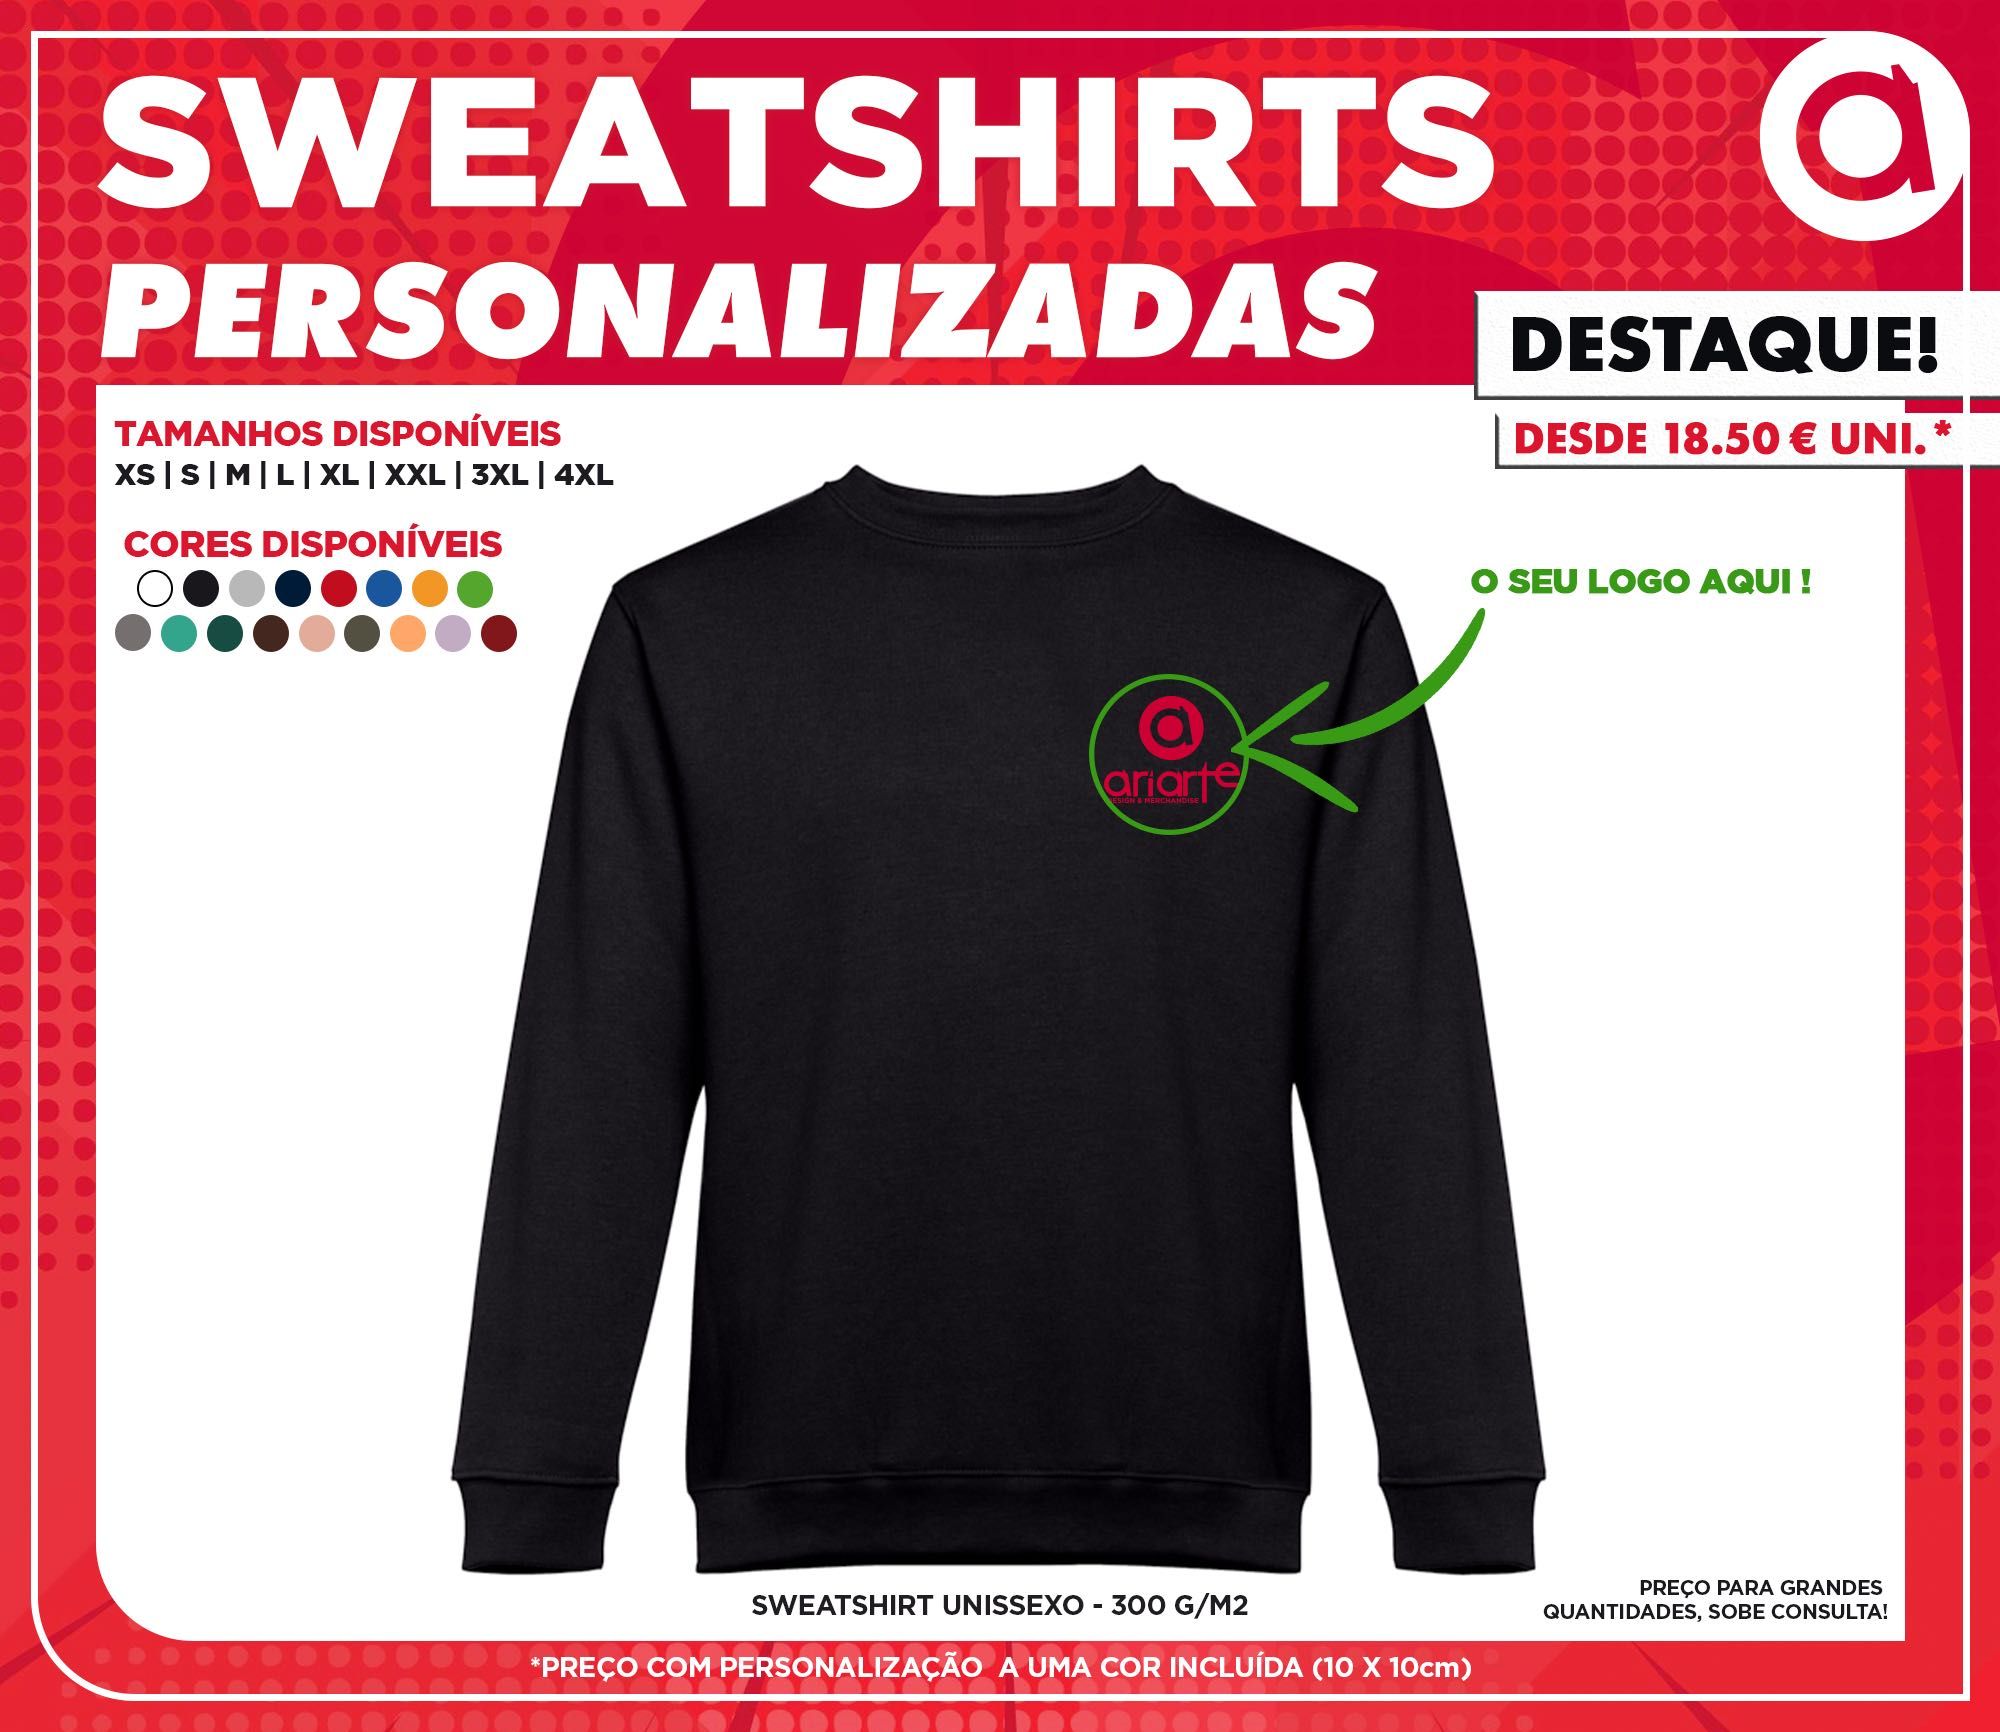 Sweatshirts Personalizadas